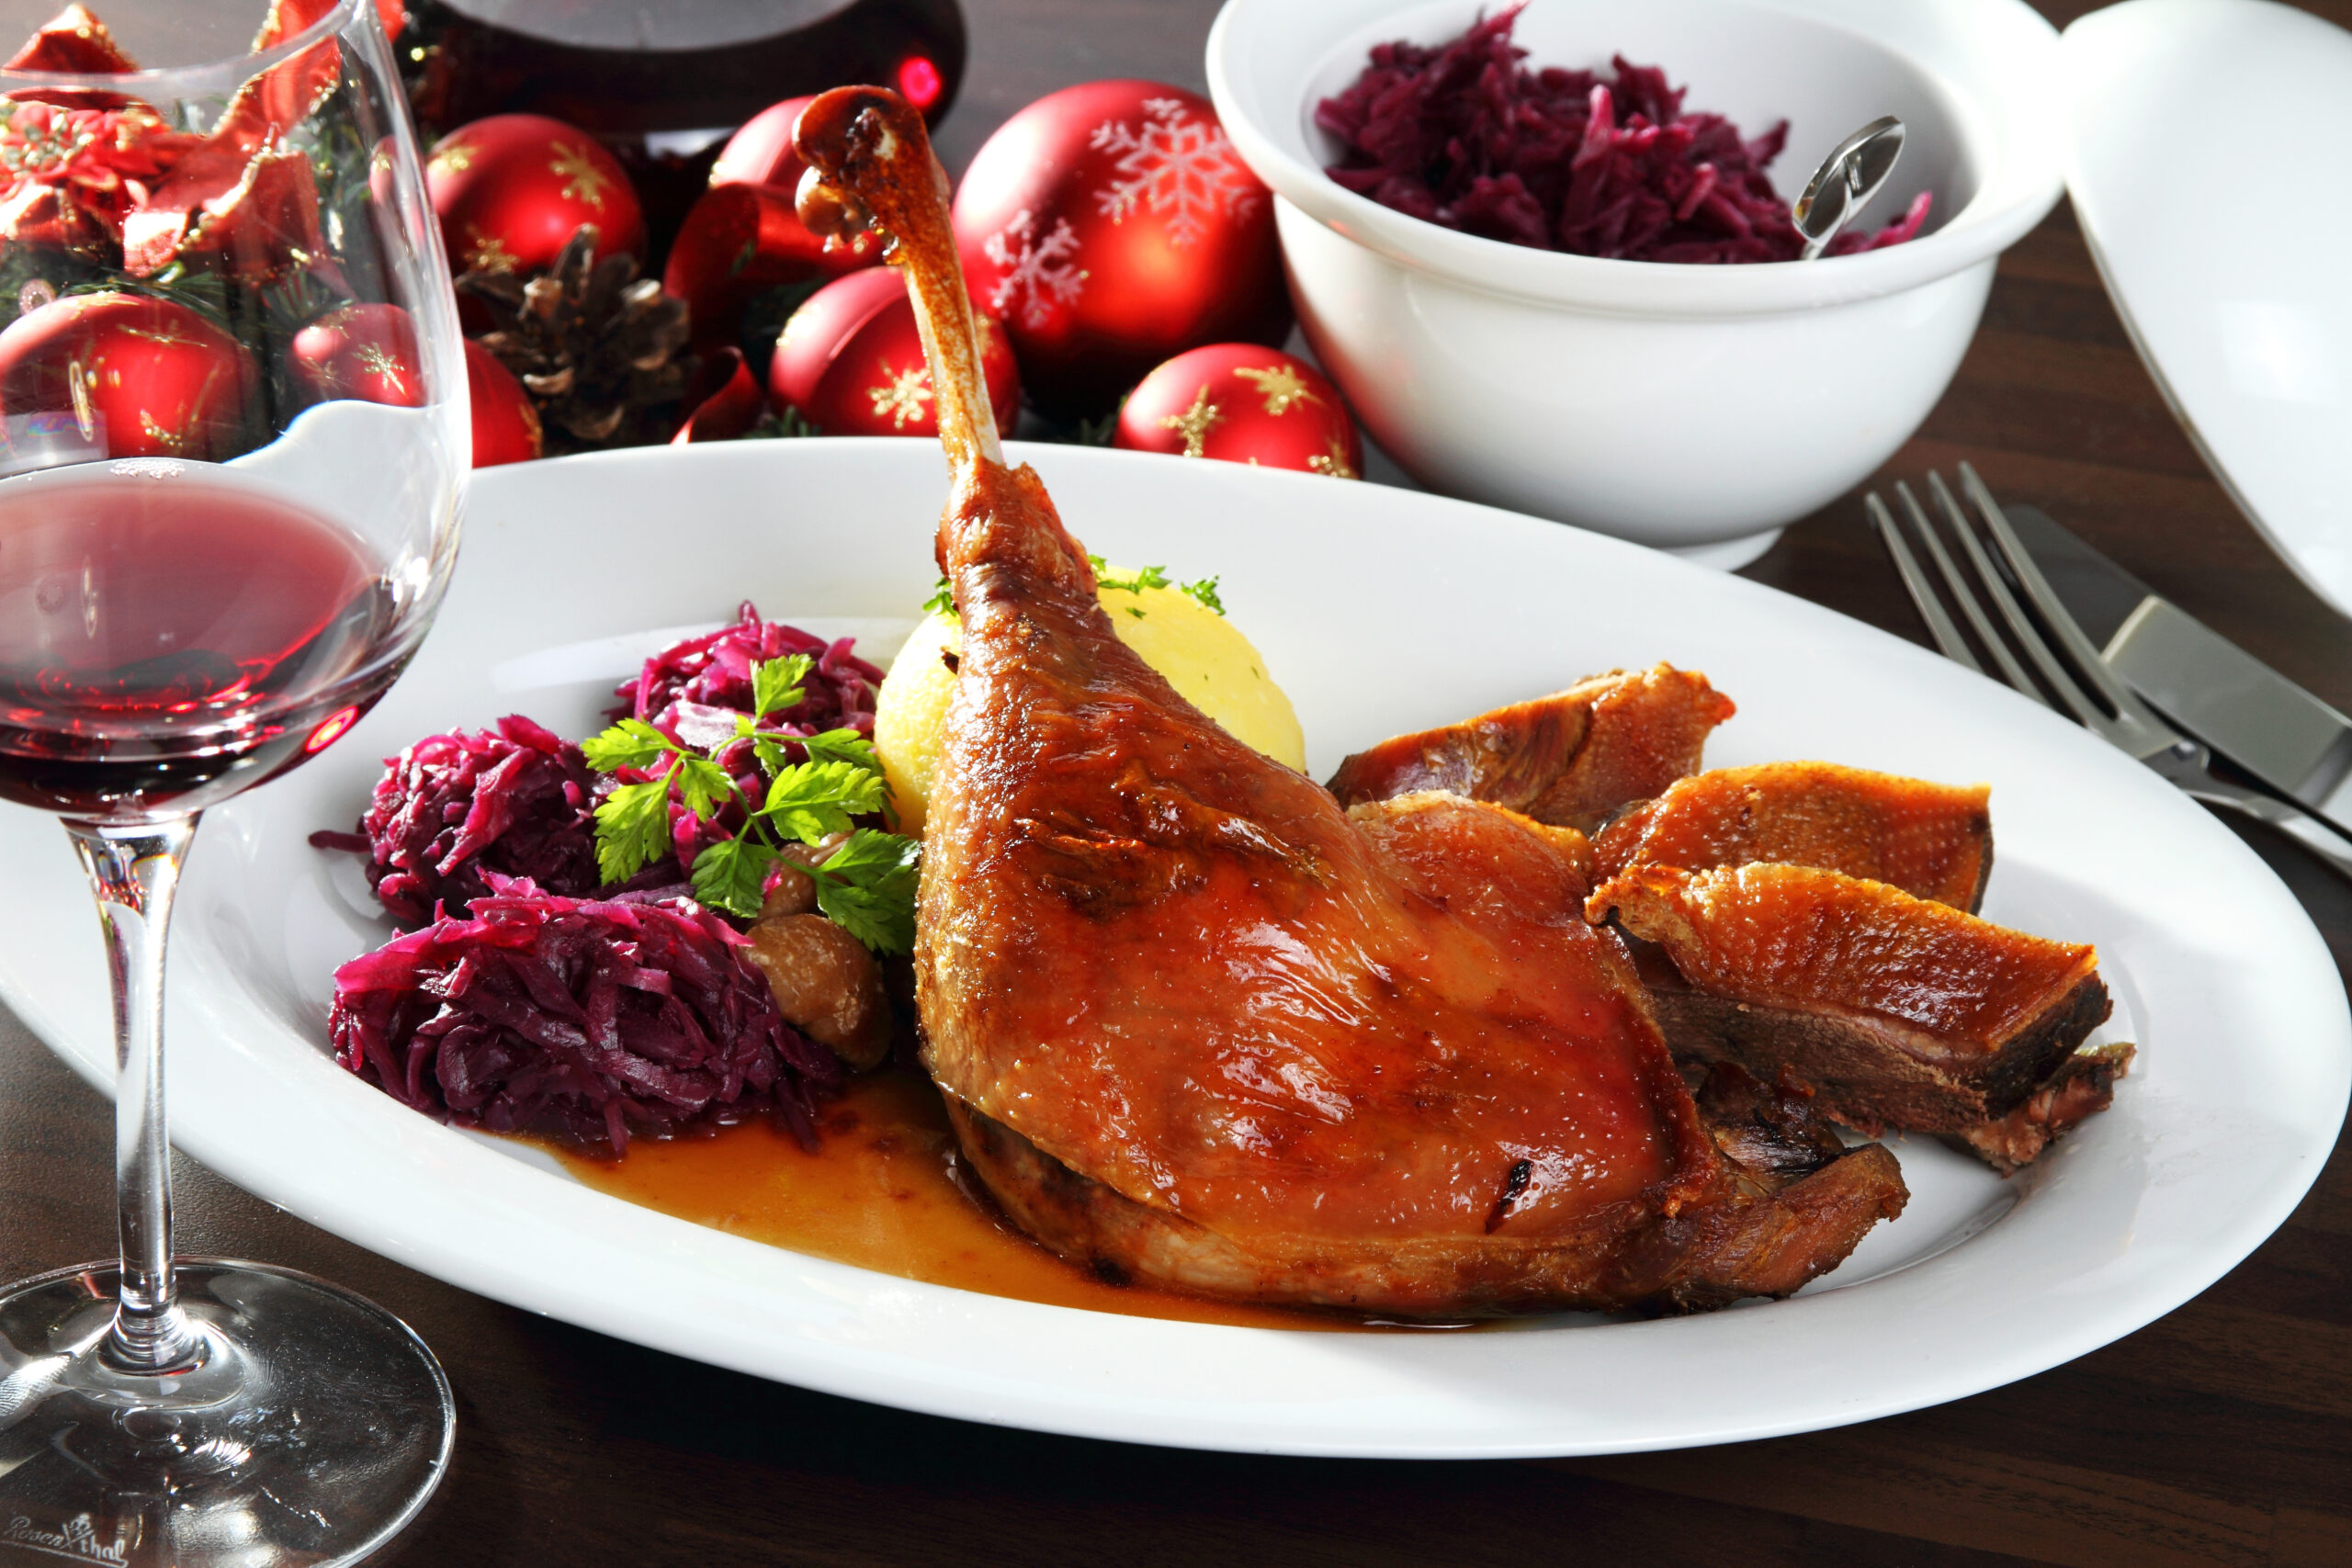 Traditionell mit Rotkohl und Knödeln kommt die Gans in der „Wein- und Friesenstube“ auf den Teller.